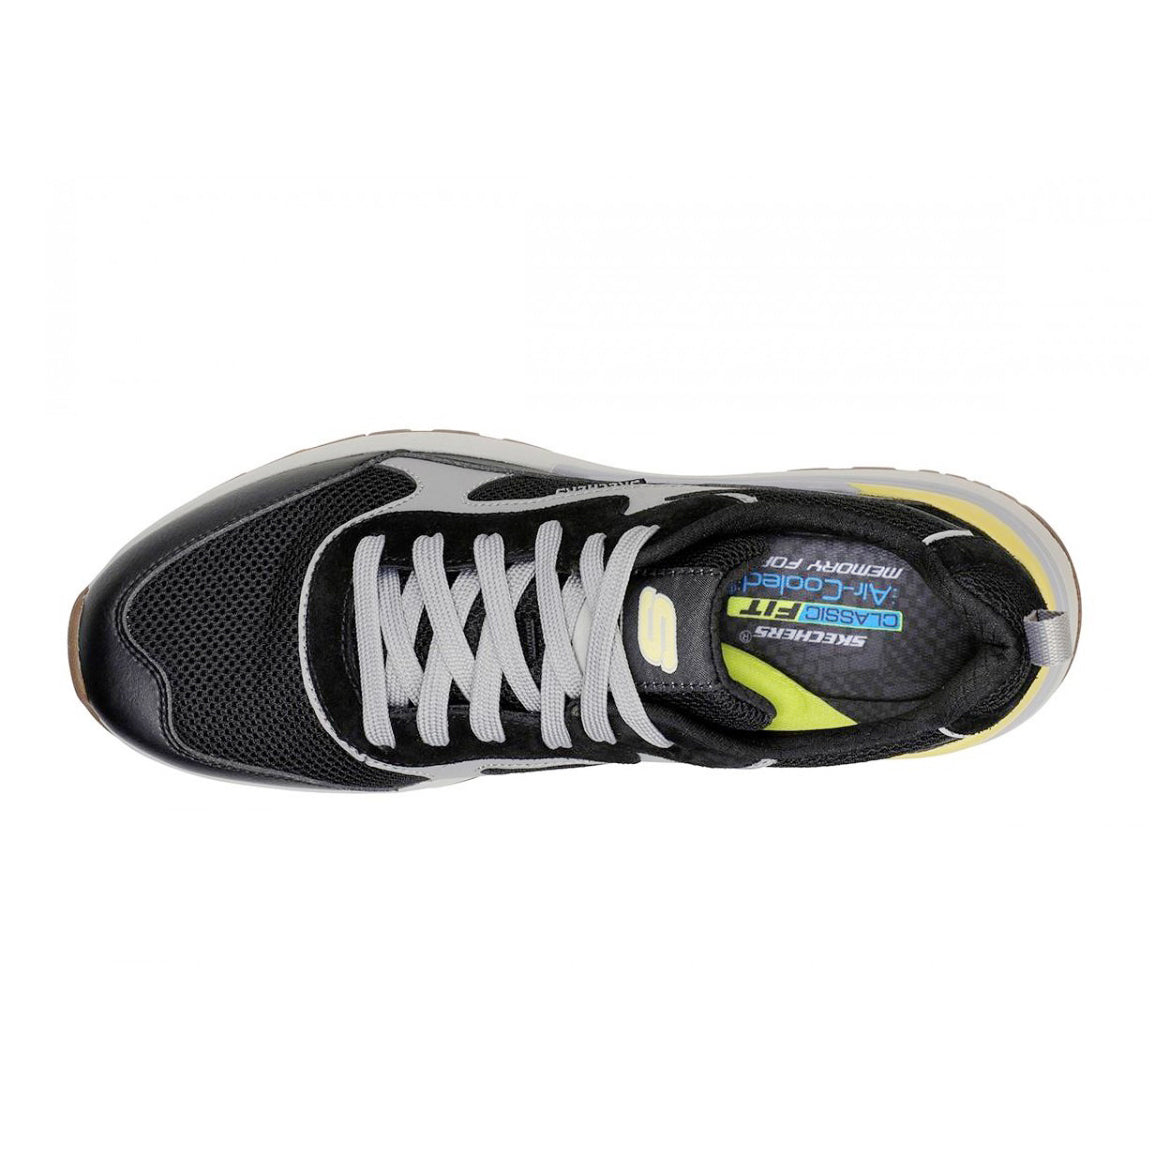 Skechers Heminger-Odello Men's Running Shoes - Best Price online Prokicksports.com